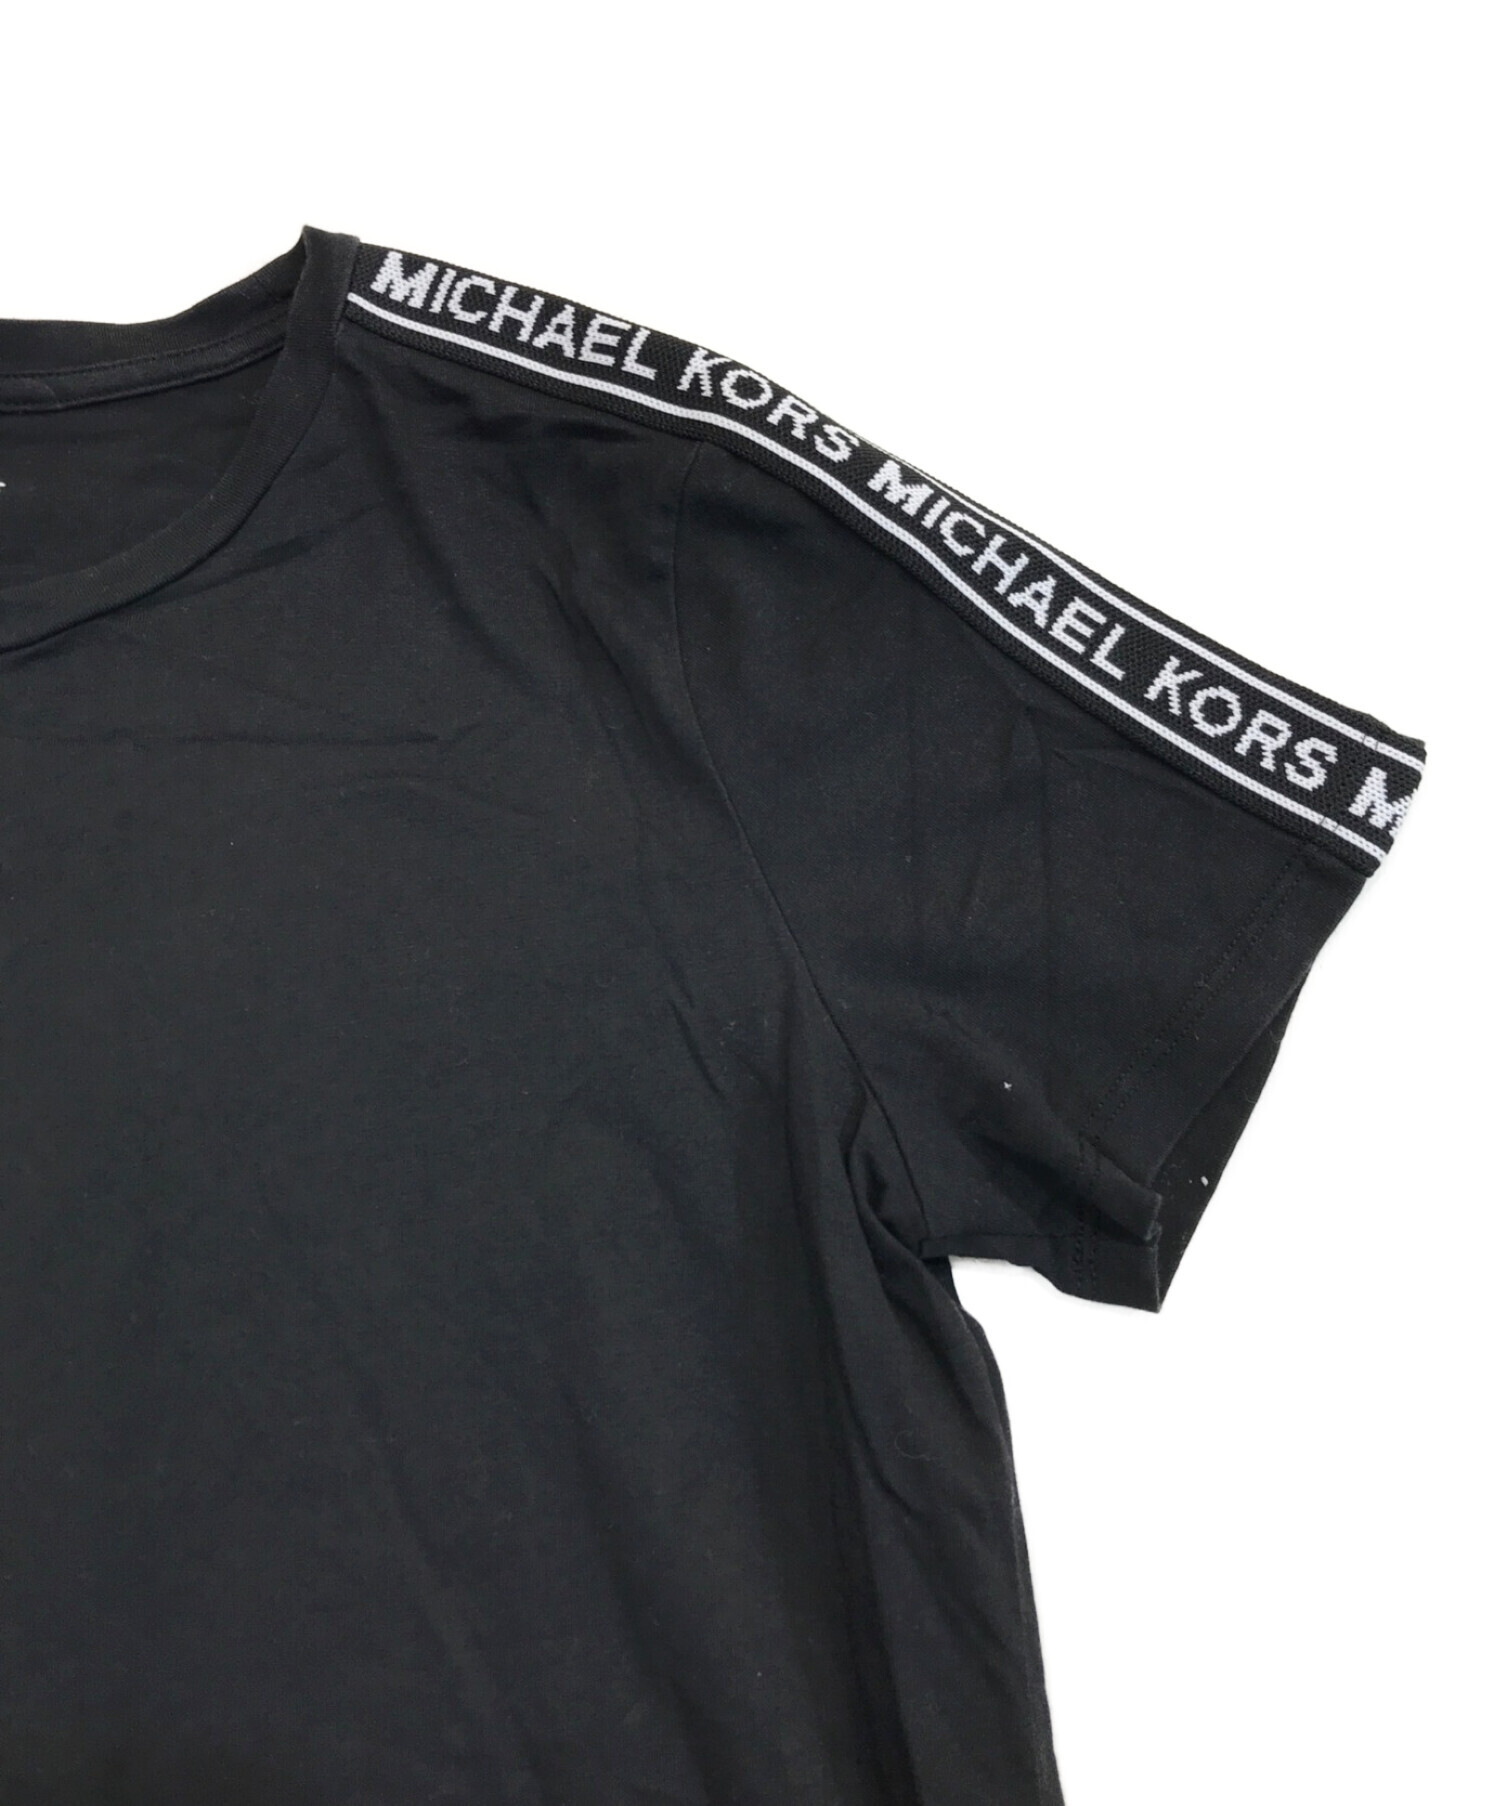 MICHAEL KORS (マイケルコース) ロゴテープTシャツ ブラック×ホワイト サイズ:M